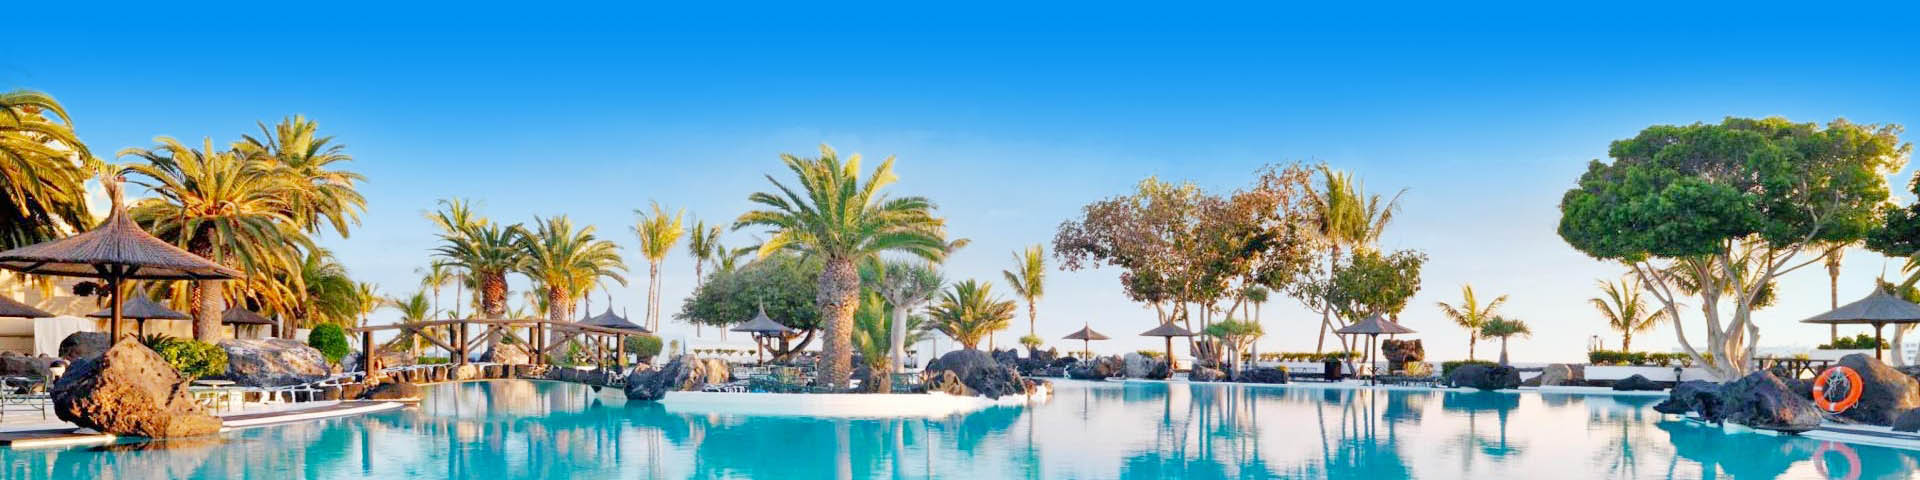 Luxe resort met zwembad en palmbomen op de Canarische Eilanden